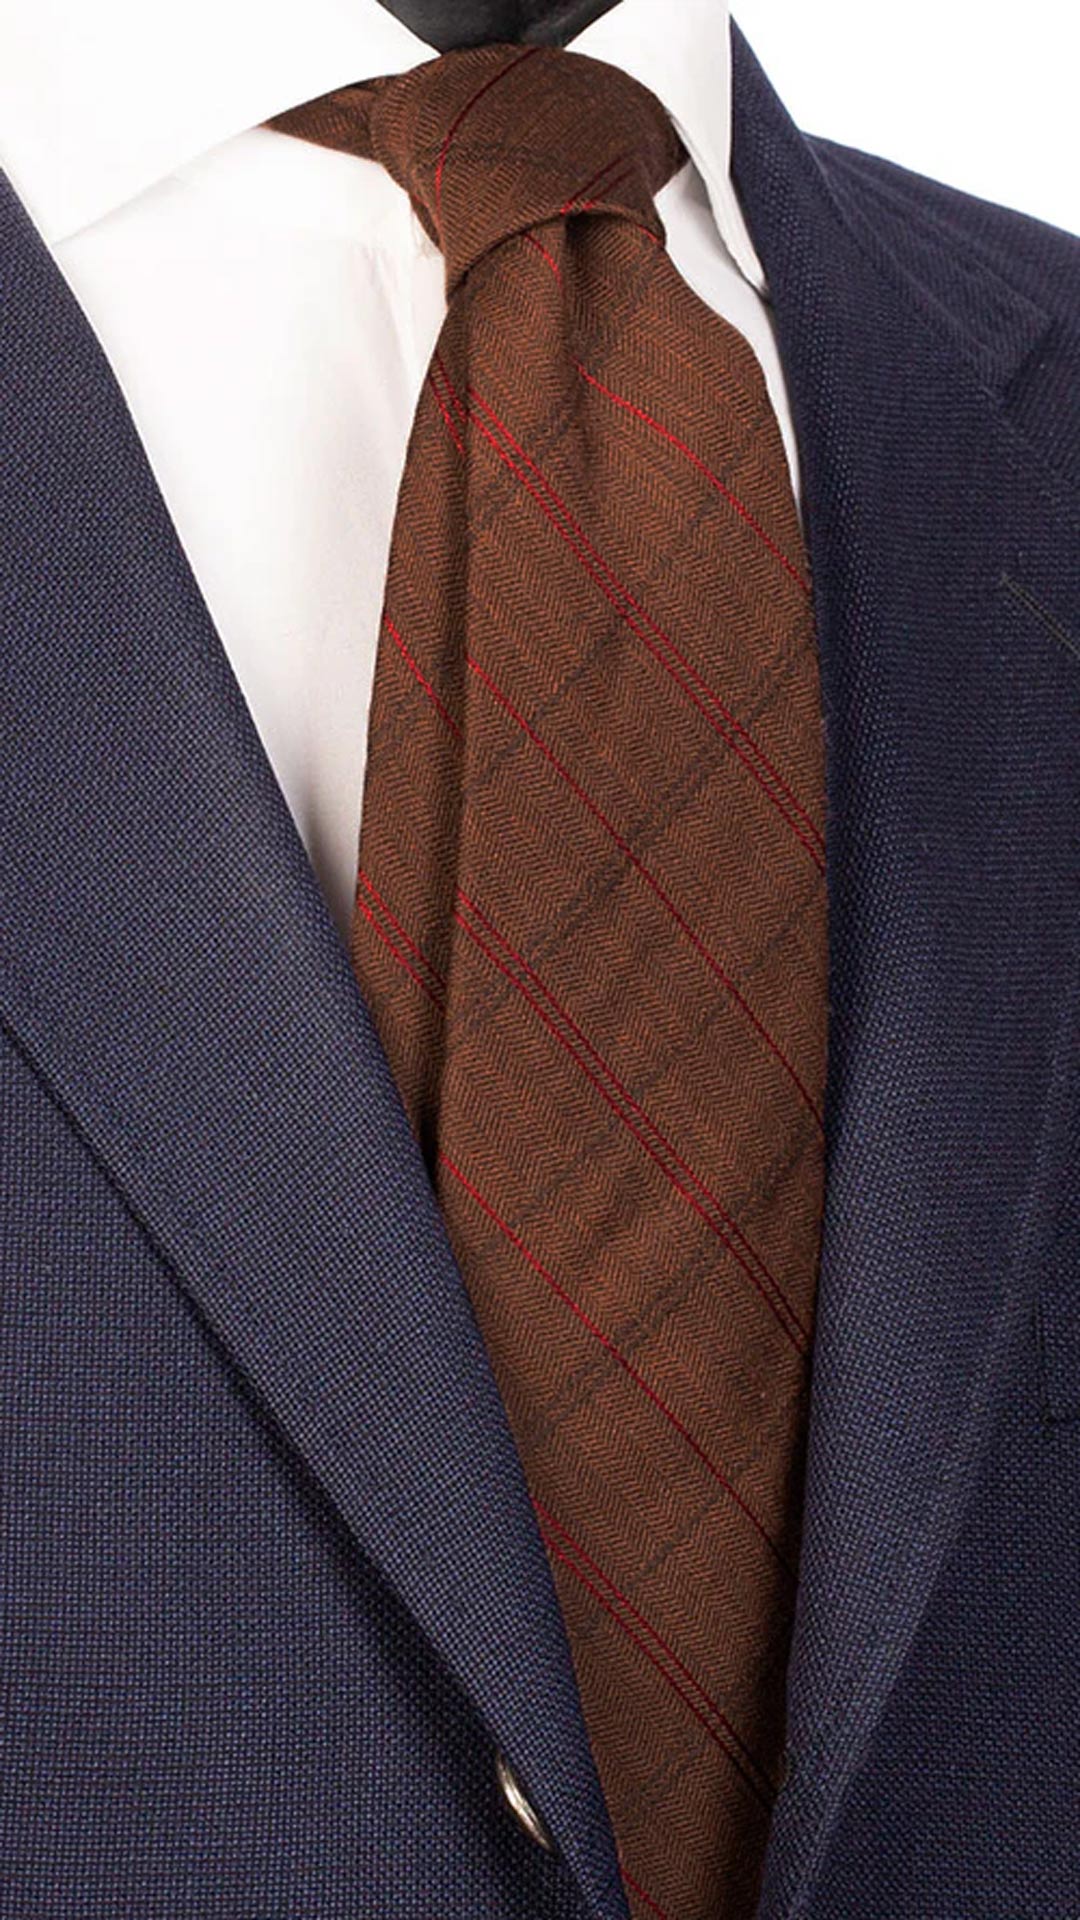 Cravatta di Lana Marrone Chiaro a Righe Rosse Marroni Made in Italy Graffeo Cravatte